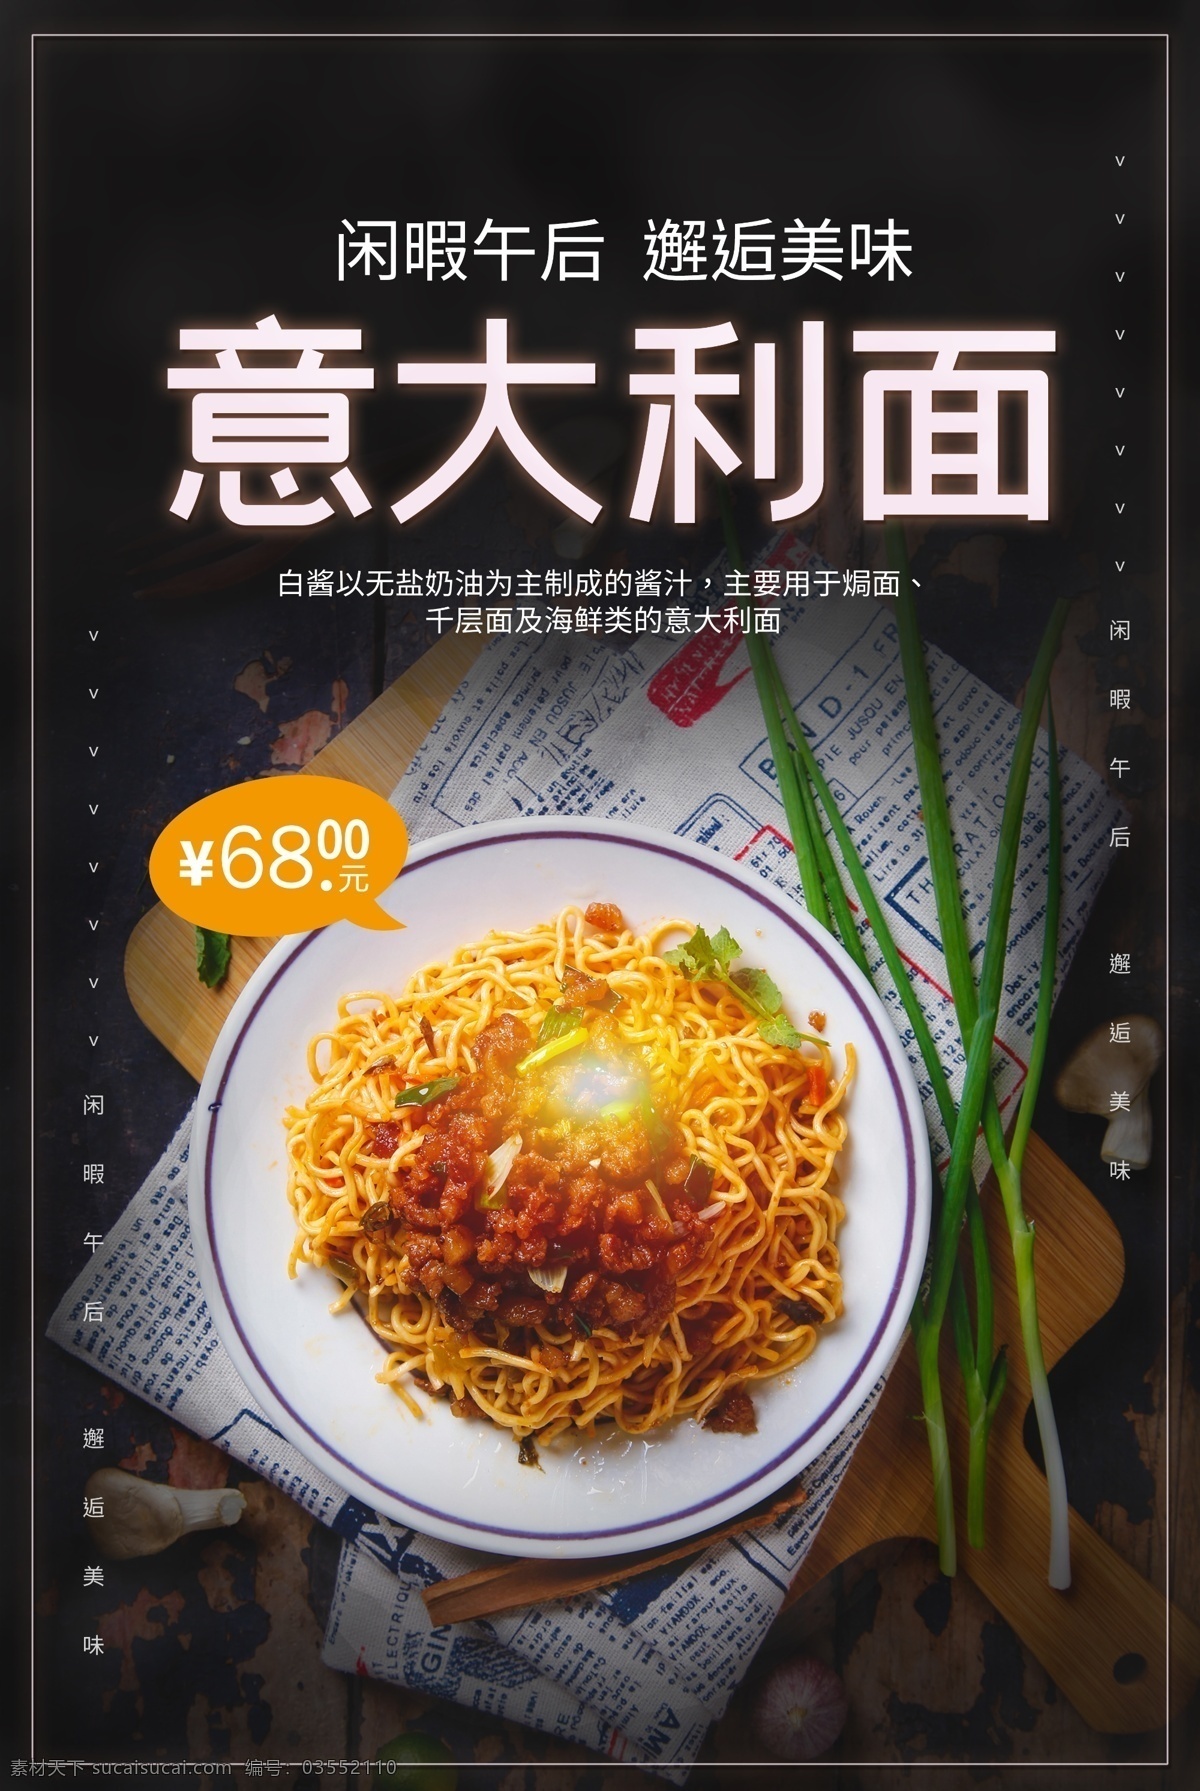 意大利 美食 活动 宣传海报 意大利面 宣传 海报 餐饮美食 类